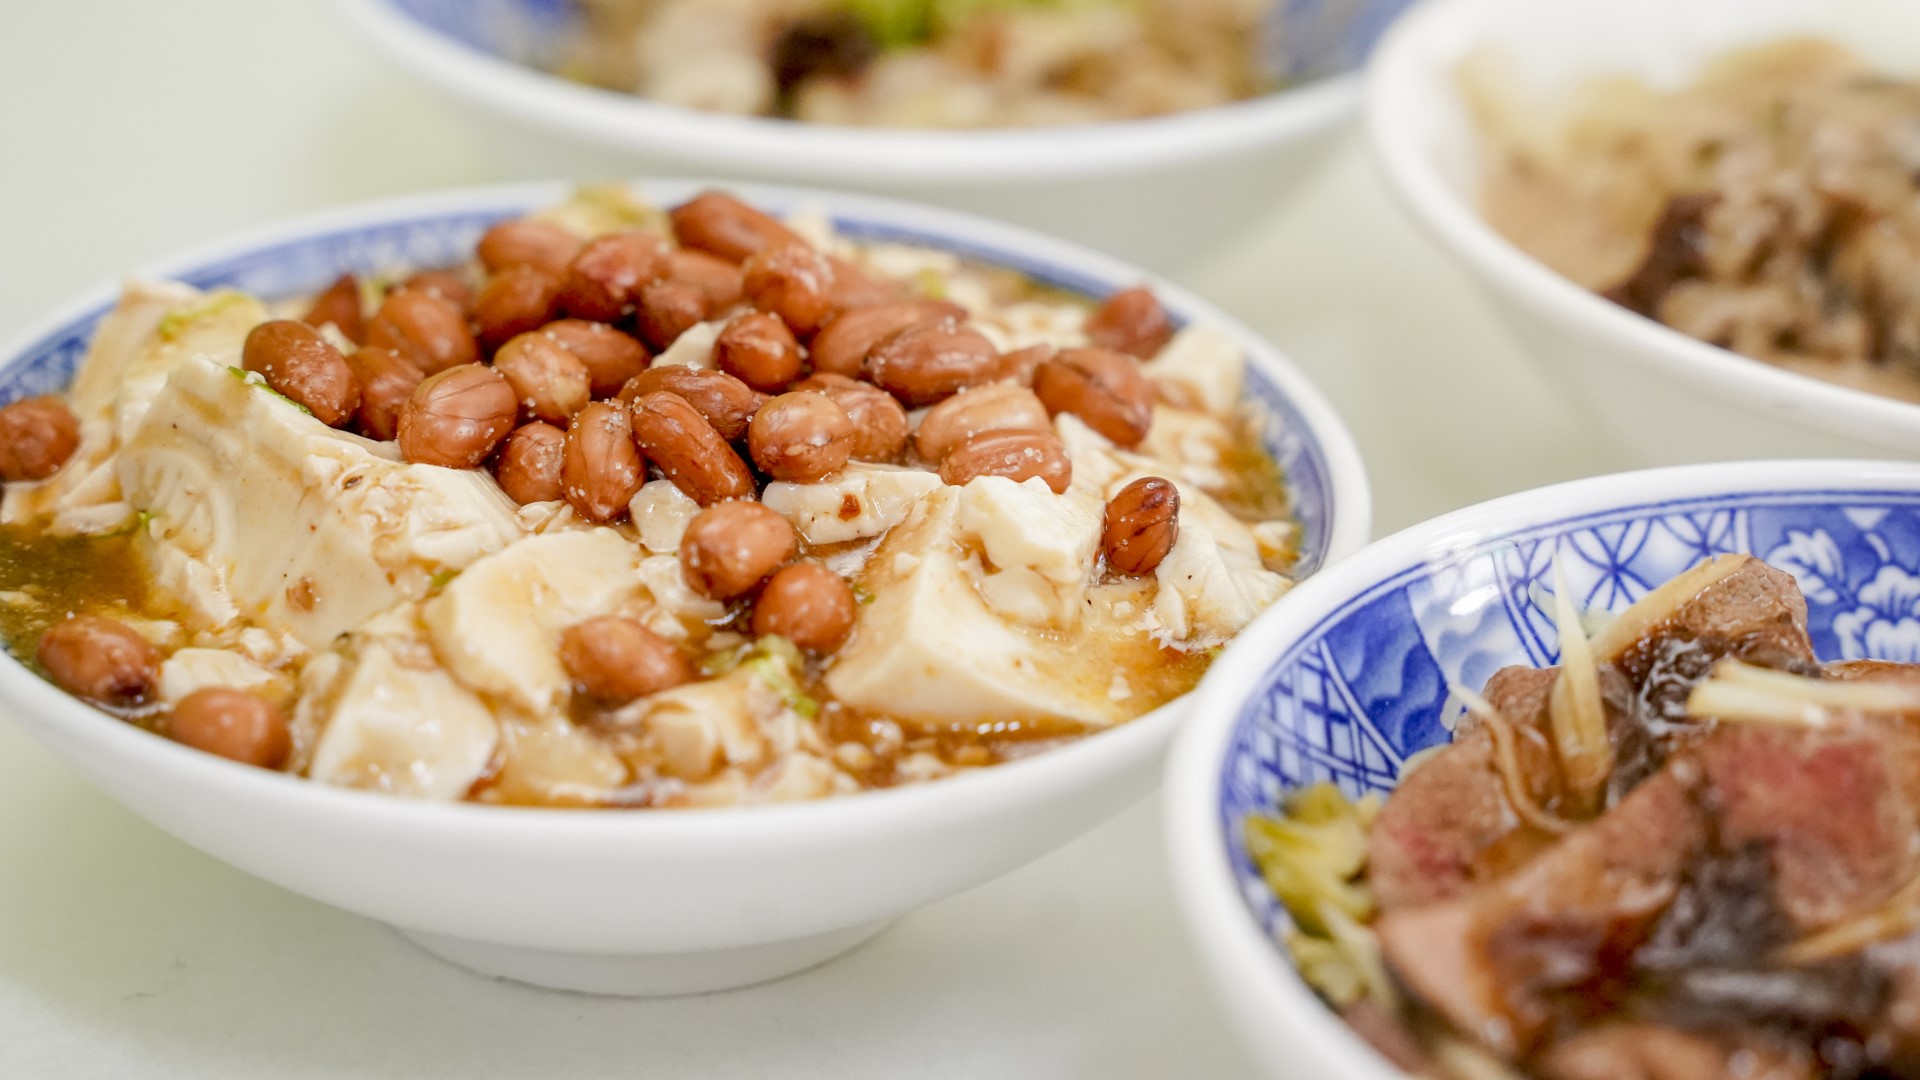 老士官擀麵店家自創的酸辣豆腐。(圖/台中市政府觀光旅遊局)